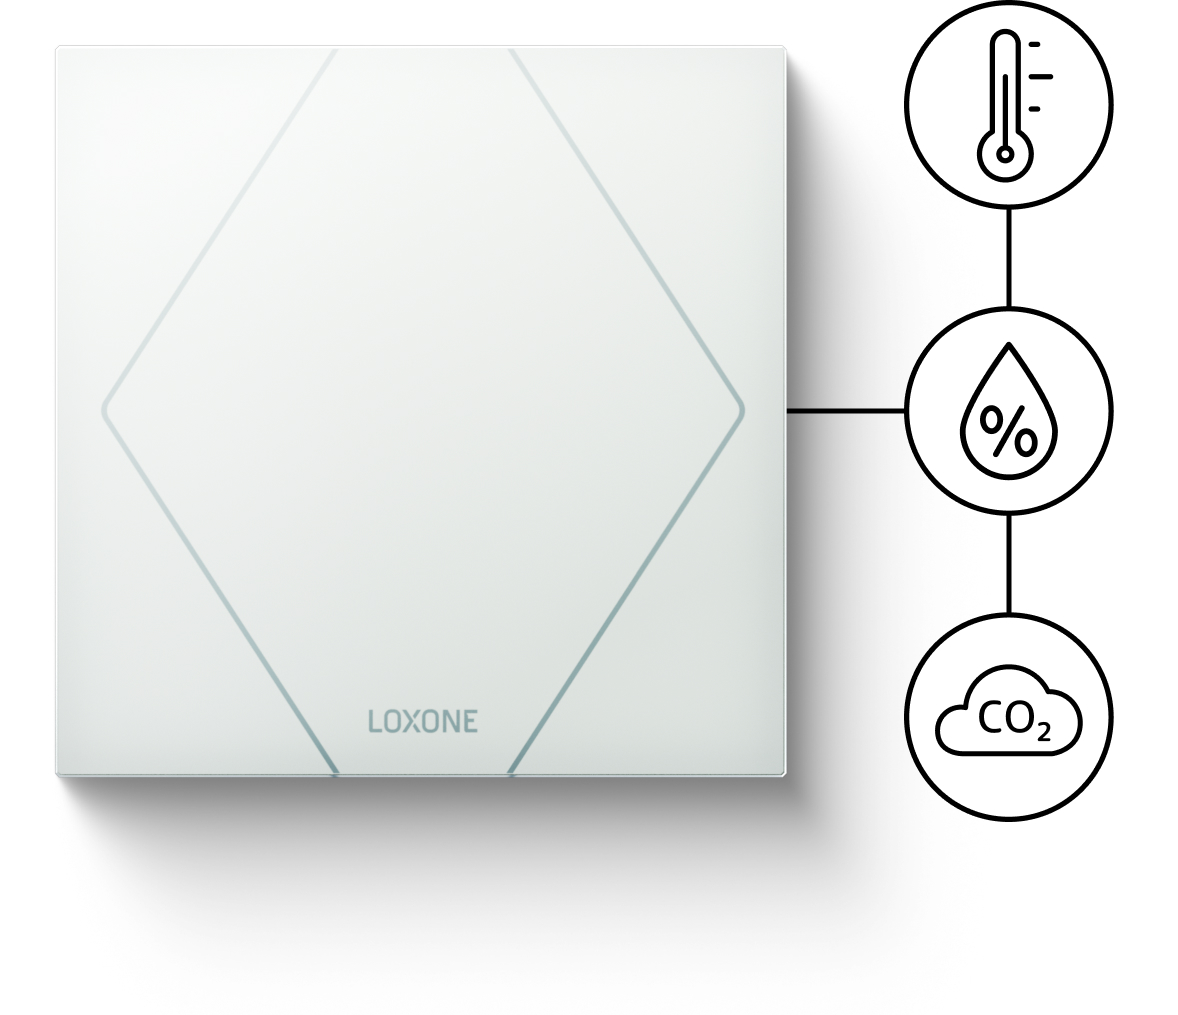 Na obrázku je Touch Pure CO2 s ikonami pro jednotlivé senzory